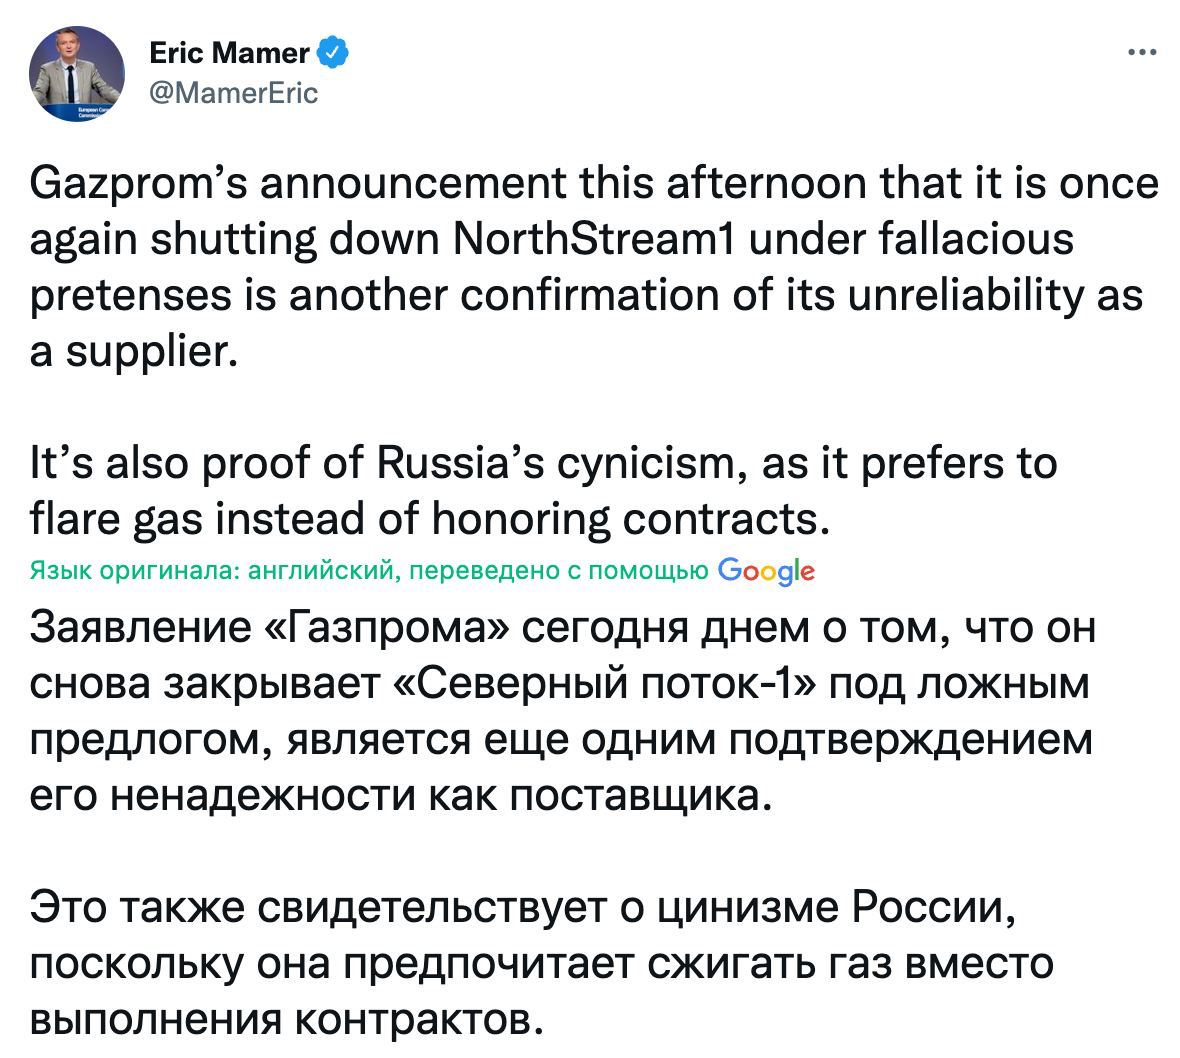 Глава пресс-службы Еврокомиссии Эрик Мамер заявил, что «Газпром» остановил поставки по «Северному потоку» под лживым предлогом с целью давления на Европу